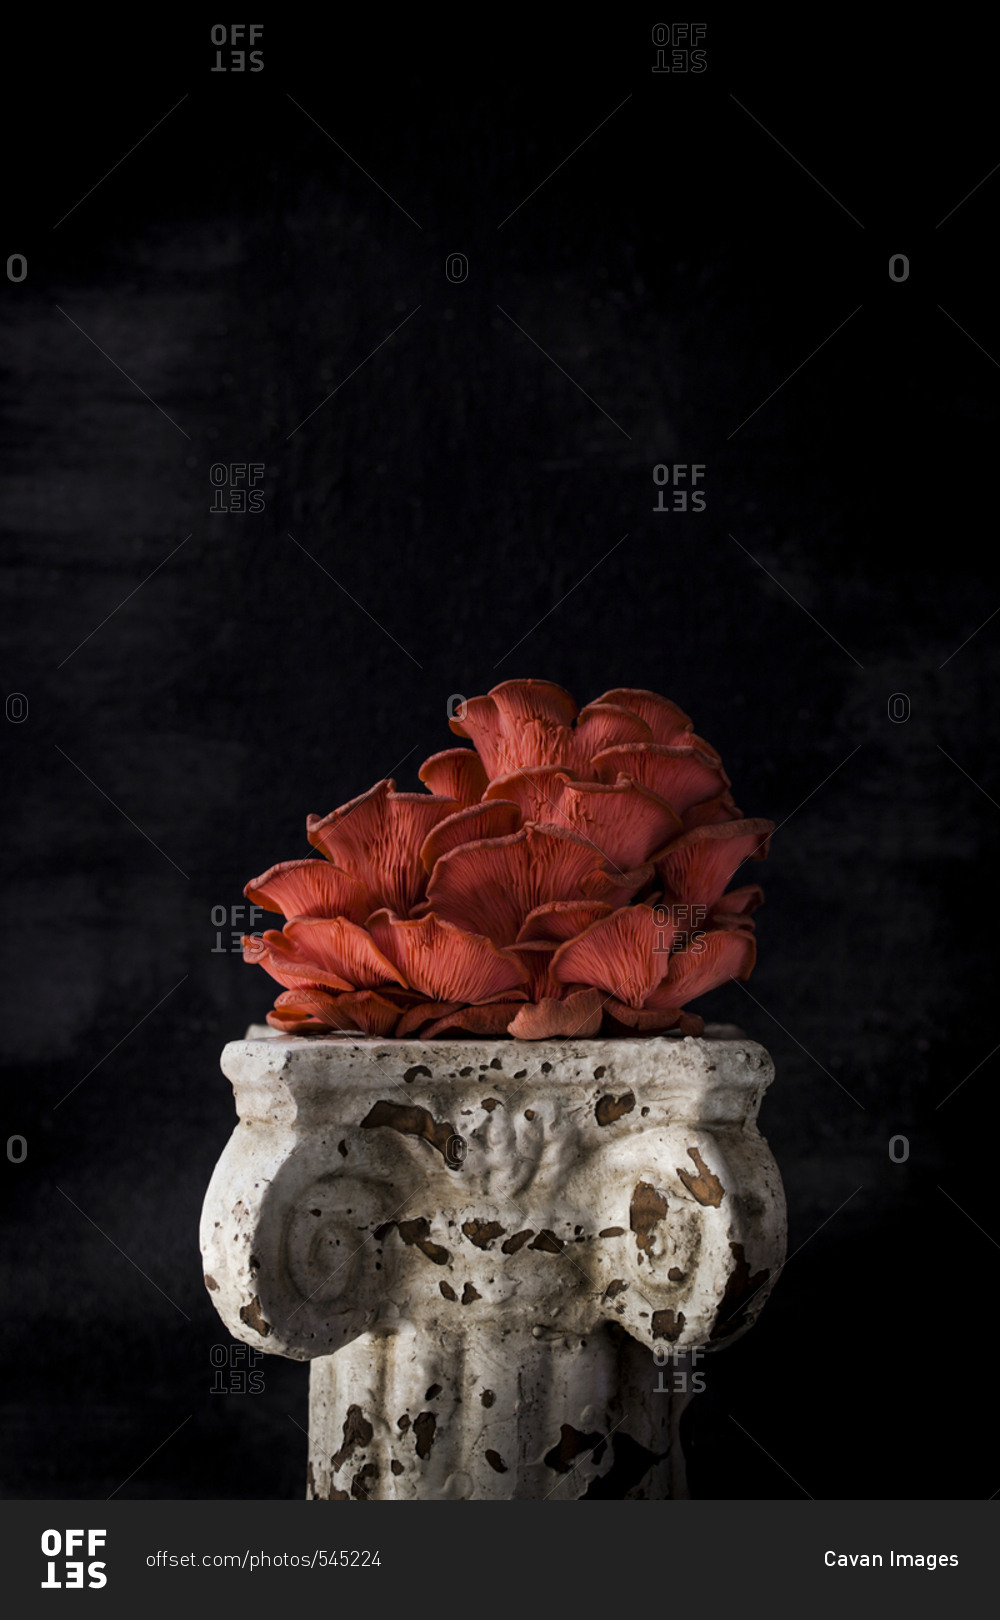 Mushroom on old pedestal against black background